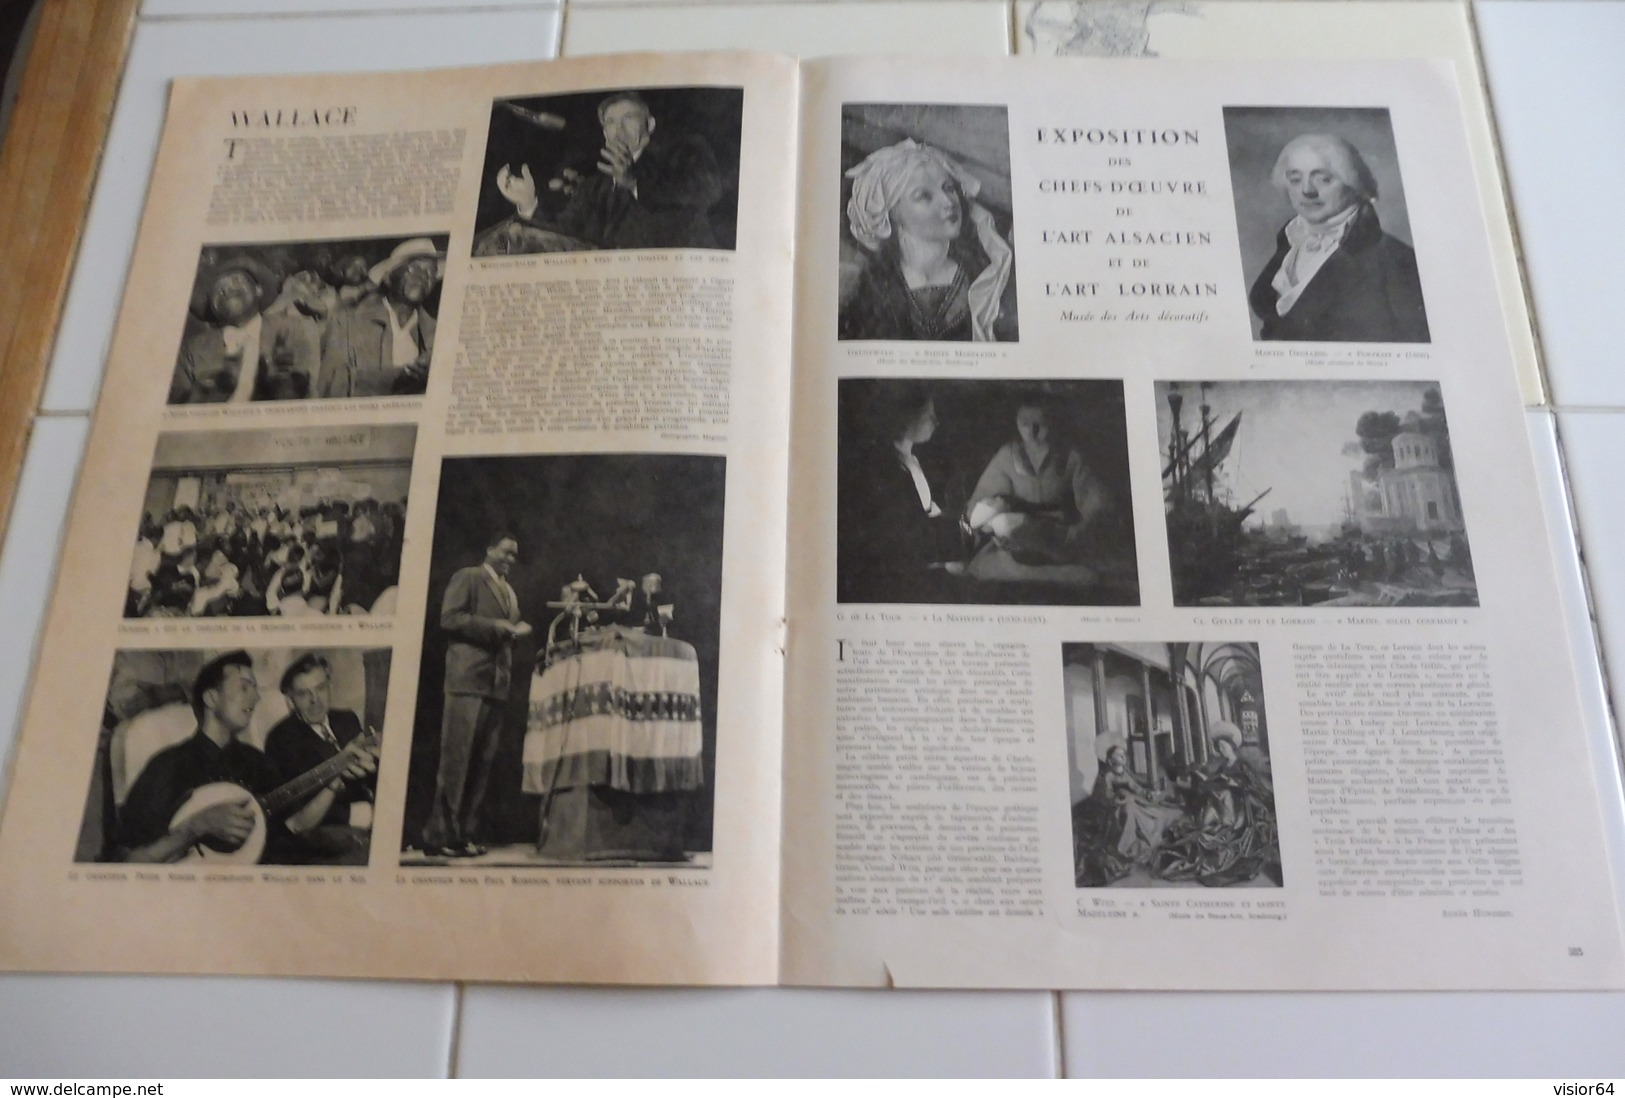 L'ILLUSTRATION 30 OCTOBRE 1948-PUITS VILLIERS A SAINT ETIENNE GREVE -COREE-CHEFS D OEUVRE ART ALSACIEN ART LORRAIN